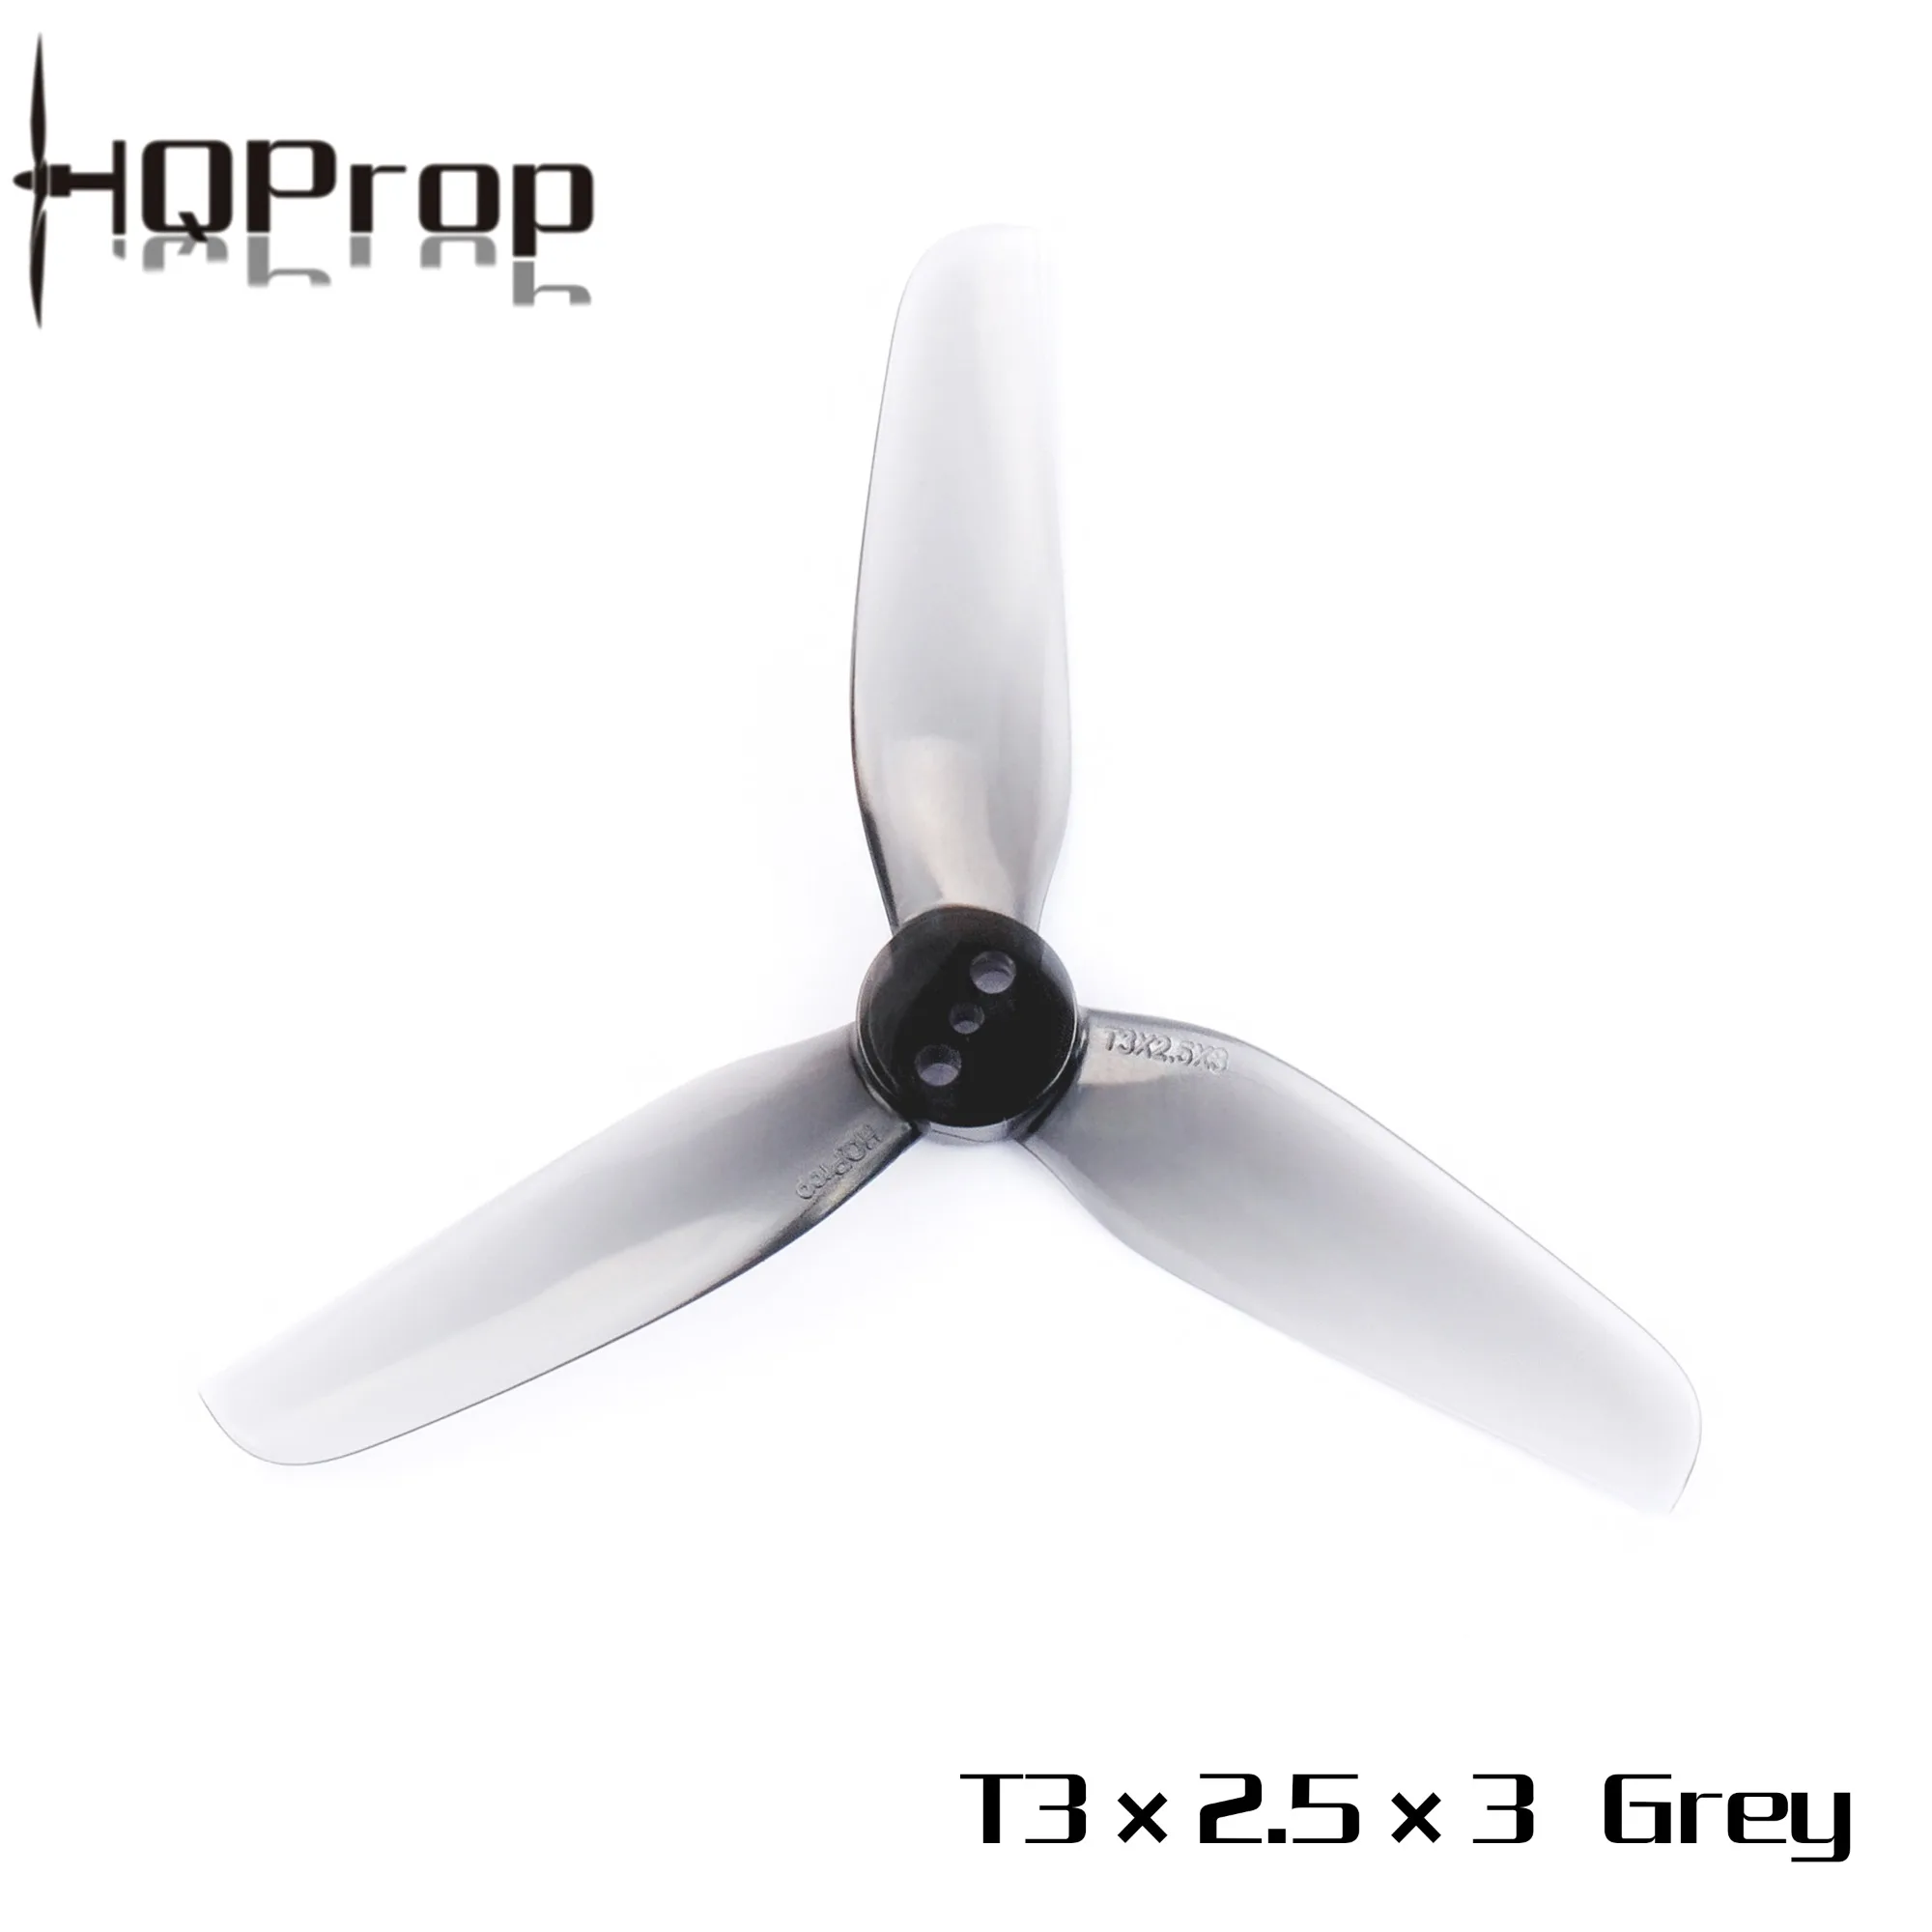 HQPROP T3x2.5x3 Grey 3025 3-Blade PC Propeller